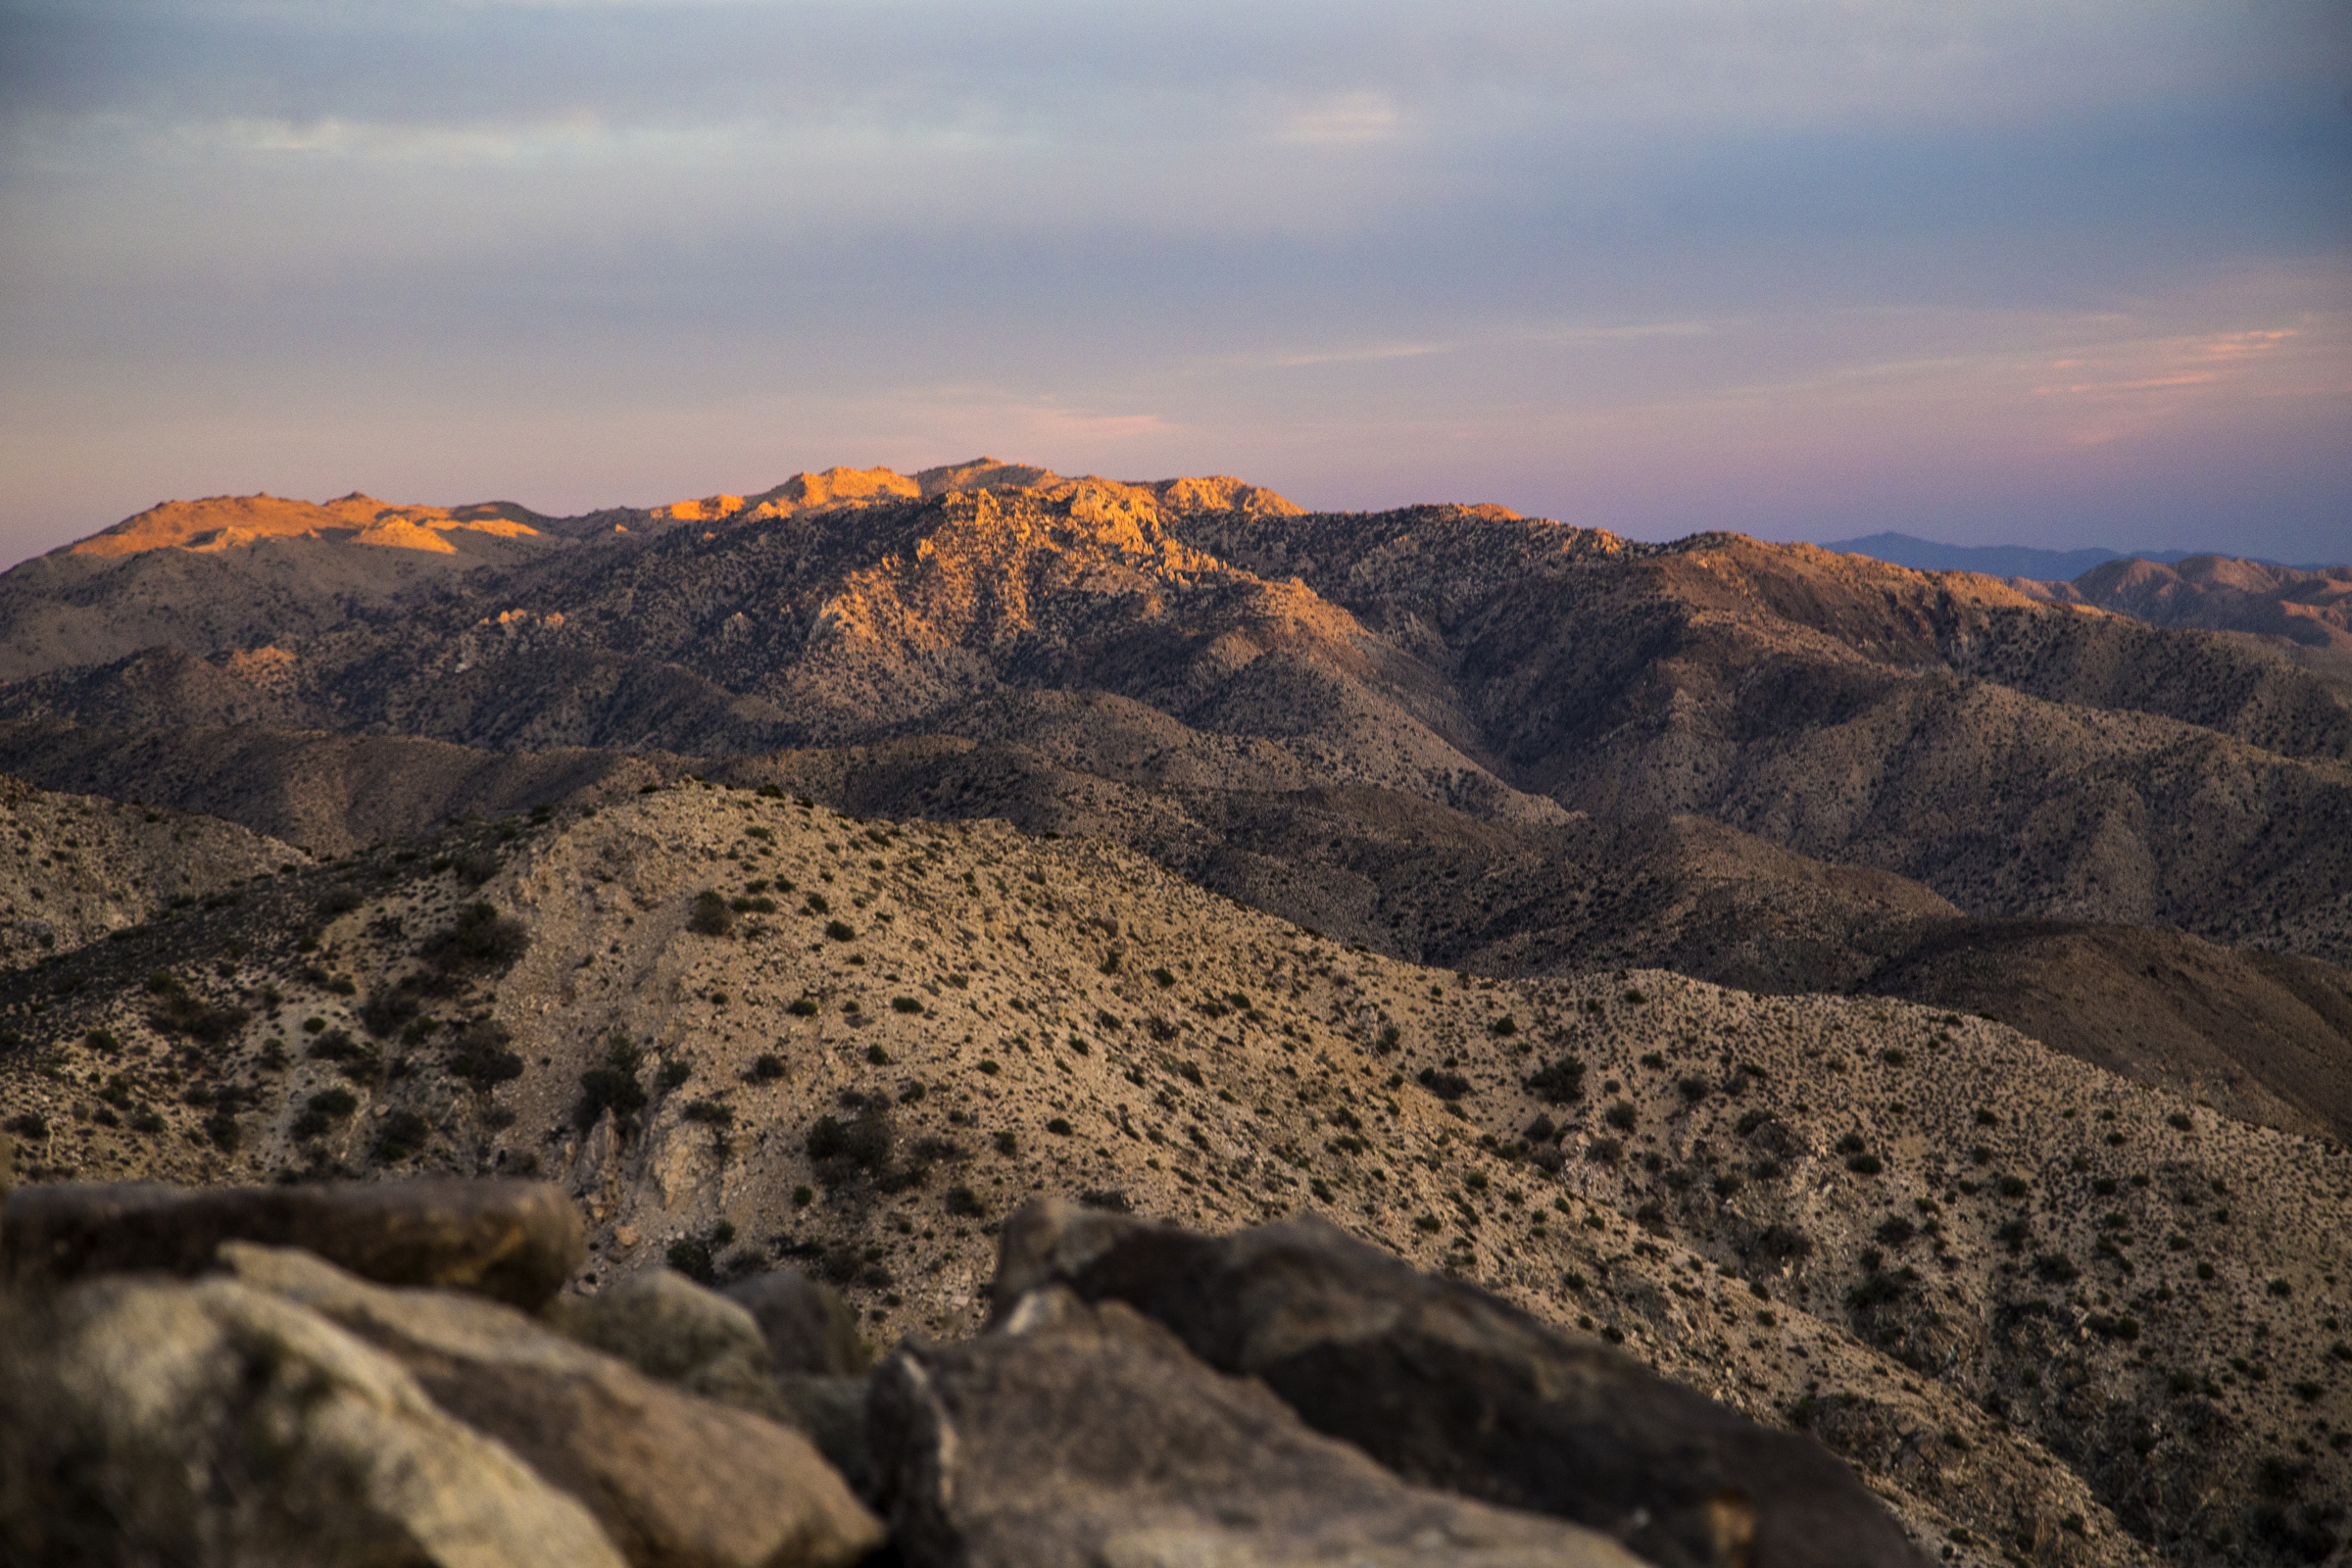  The sunset over the Mojave Desert, Joshua Tree National Park, California  